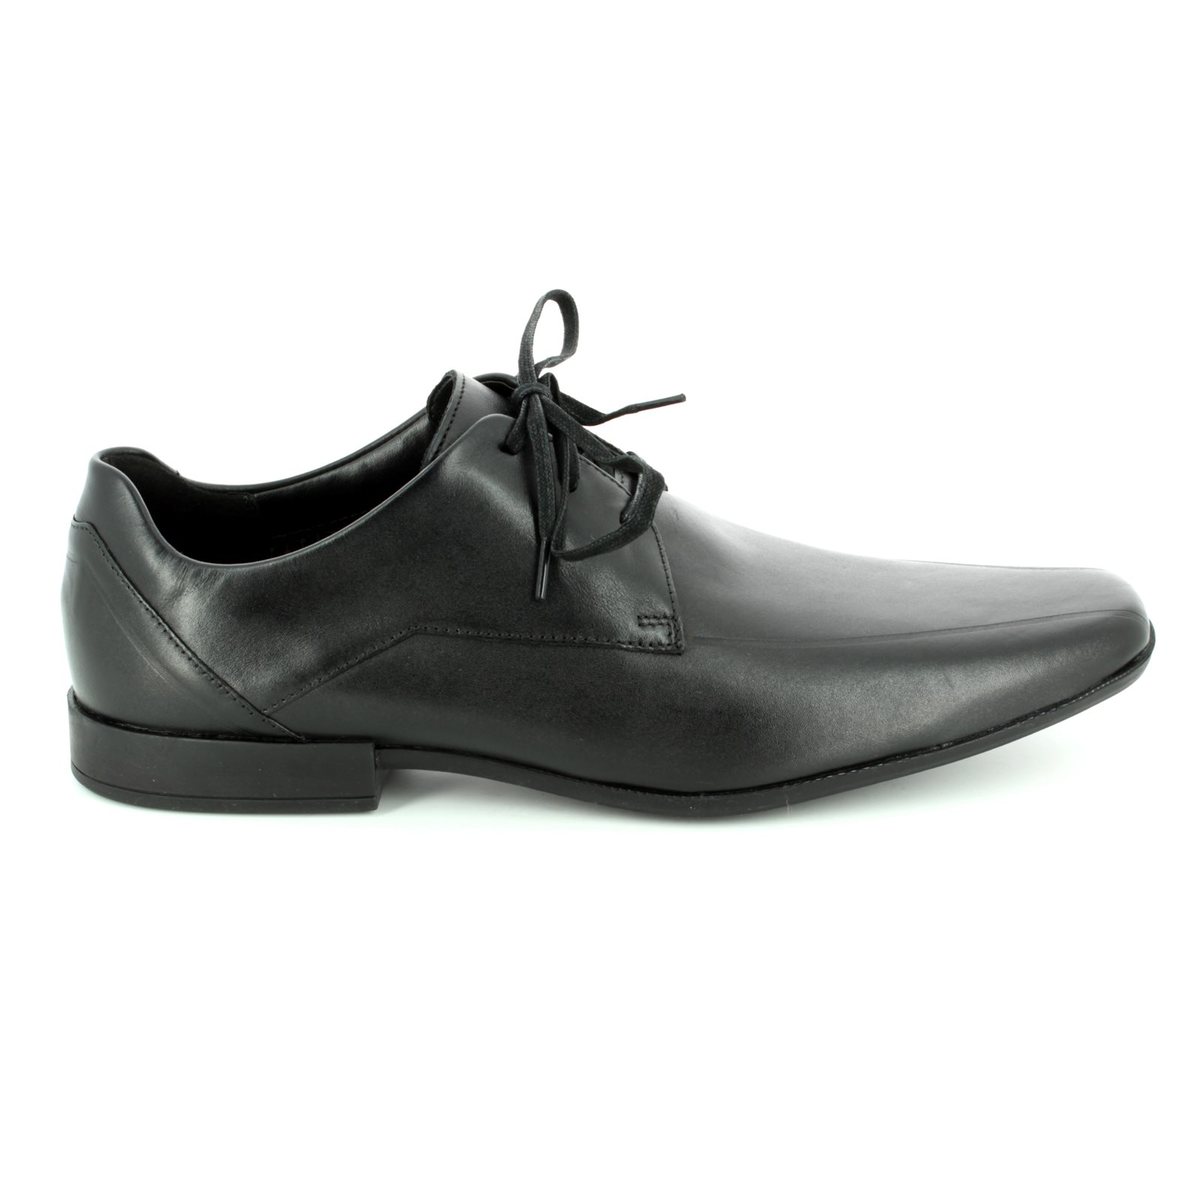 clarks black formal shoes